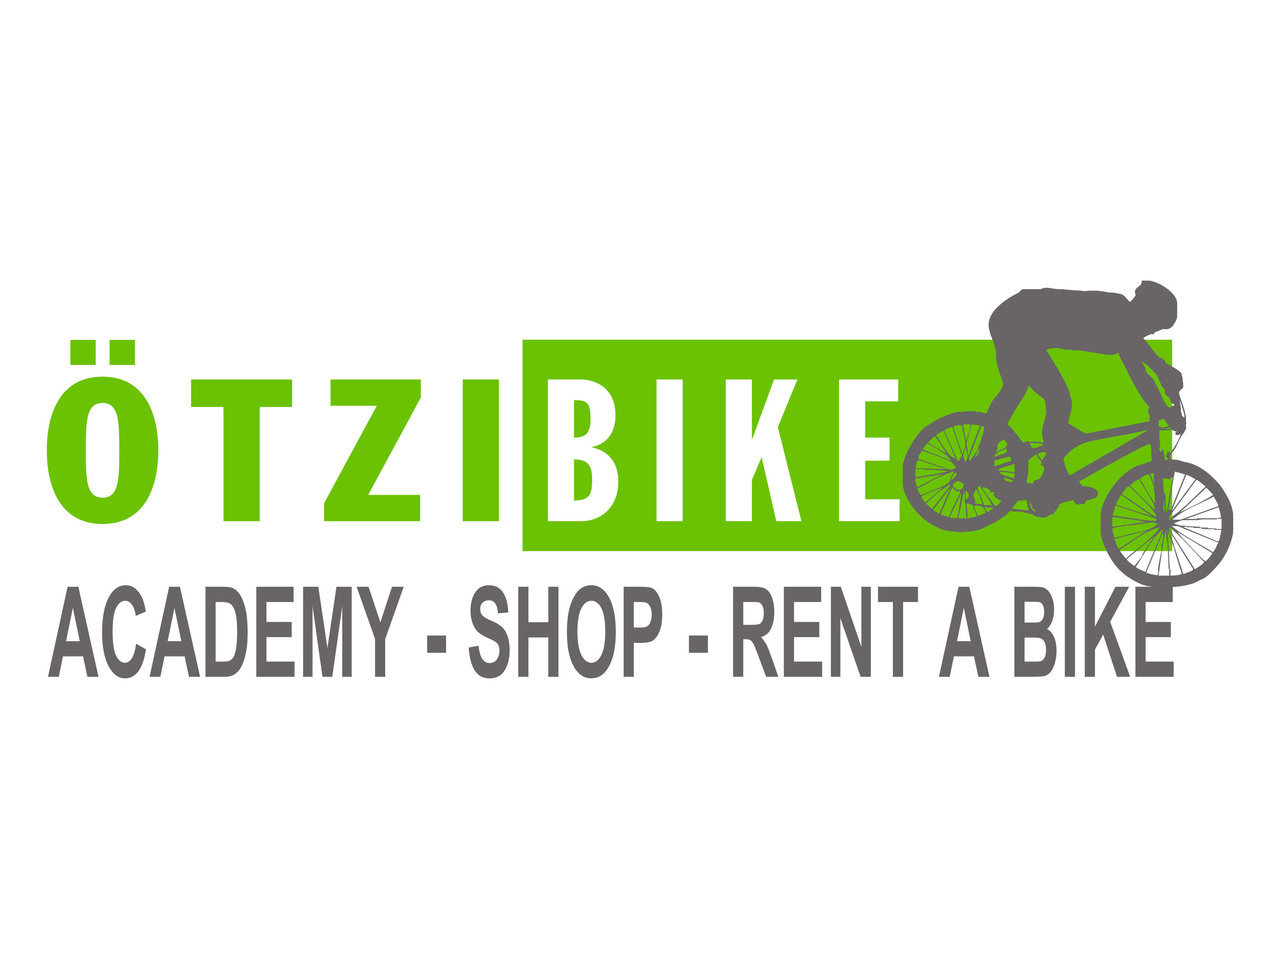 L'Accademia Ötzibike offre tutto ciò di cui il cuore del motociclista ha bisogno, dalle visite guidate, alle riparazioni e alla vendita di biciclette a Naturno.